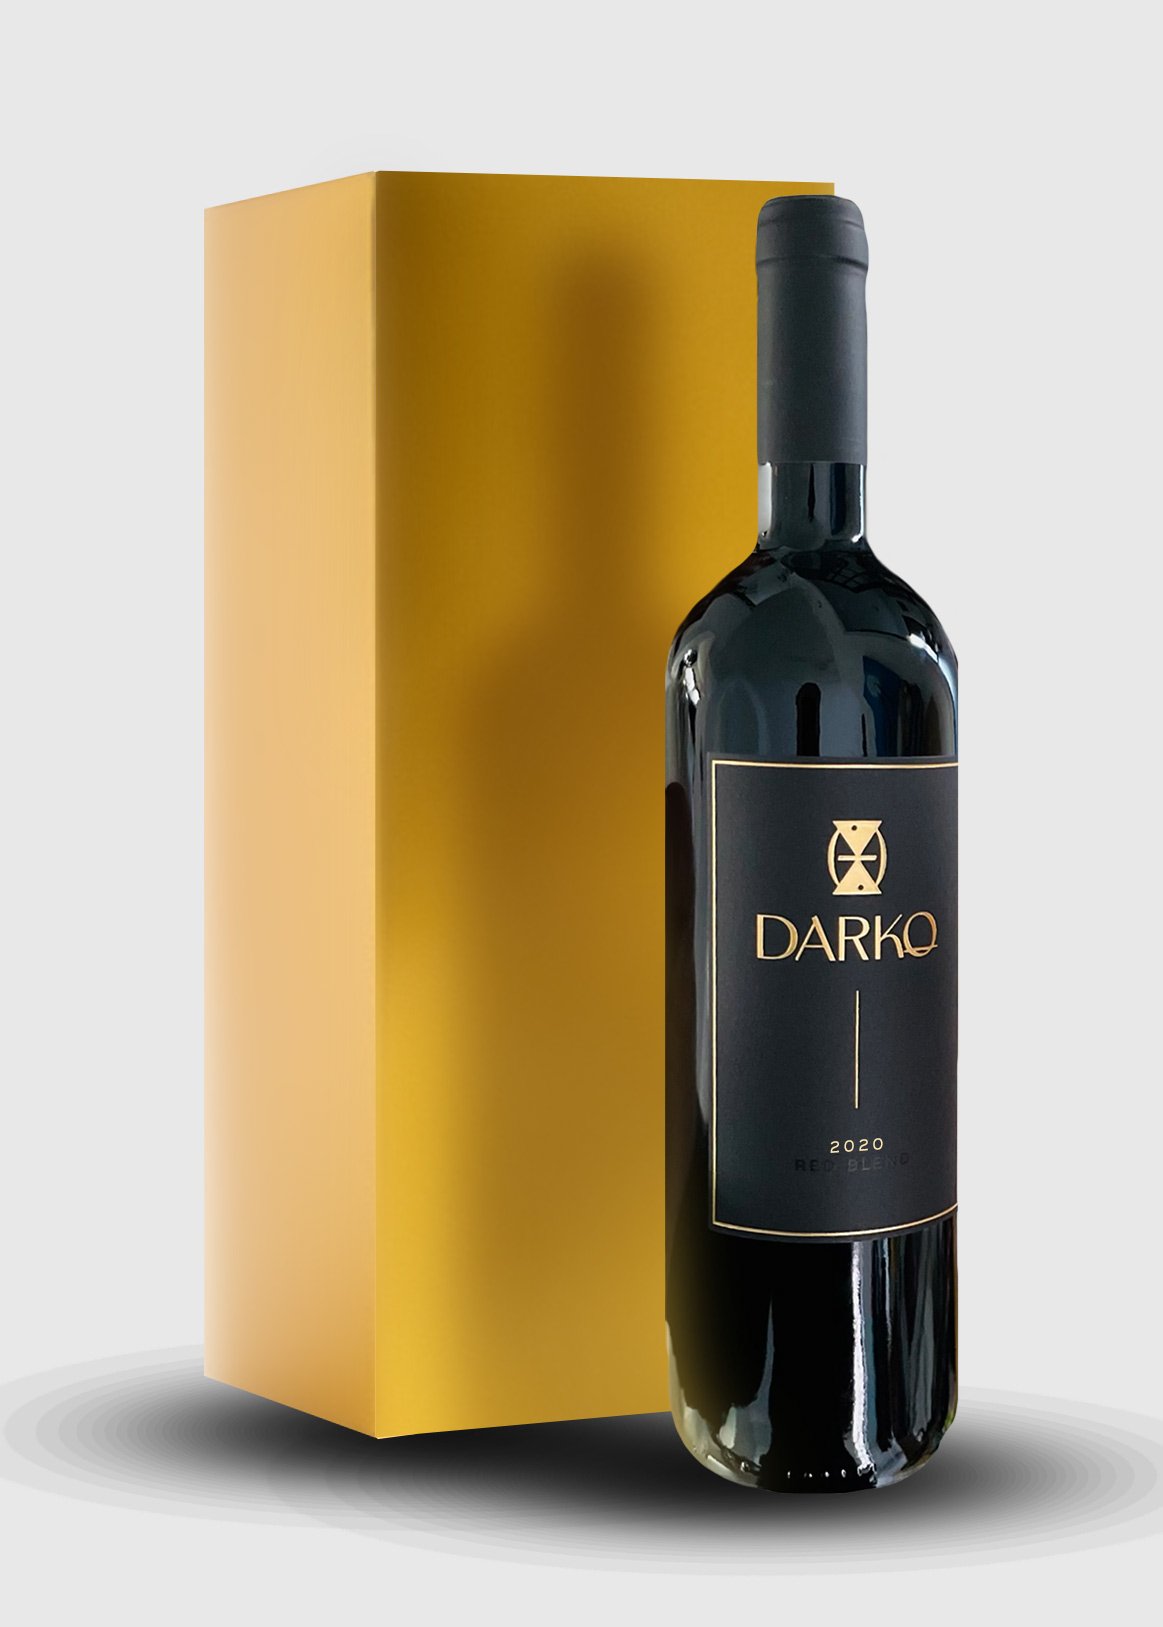 2020 Darko Wines Reserve Darko - 3 — Wines Red Bottle Set Blend